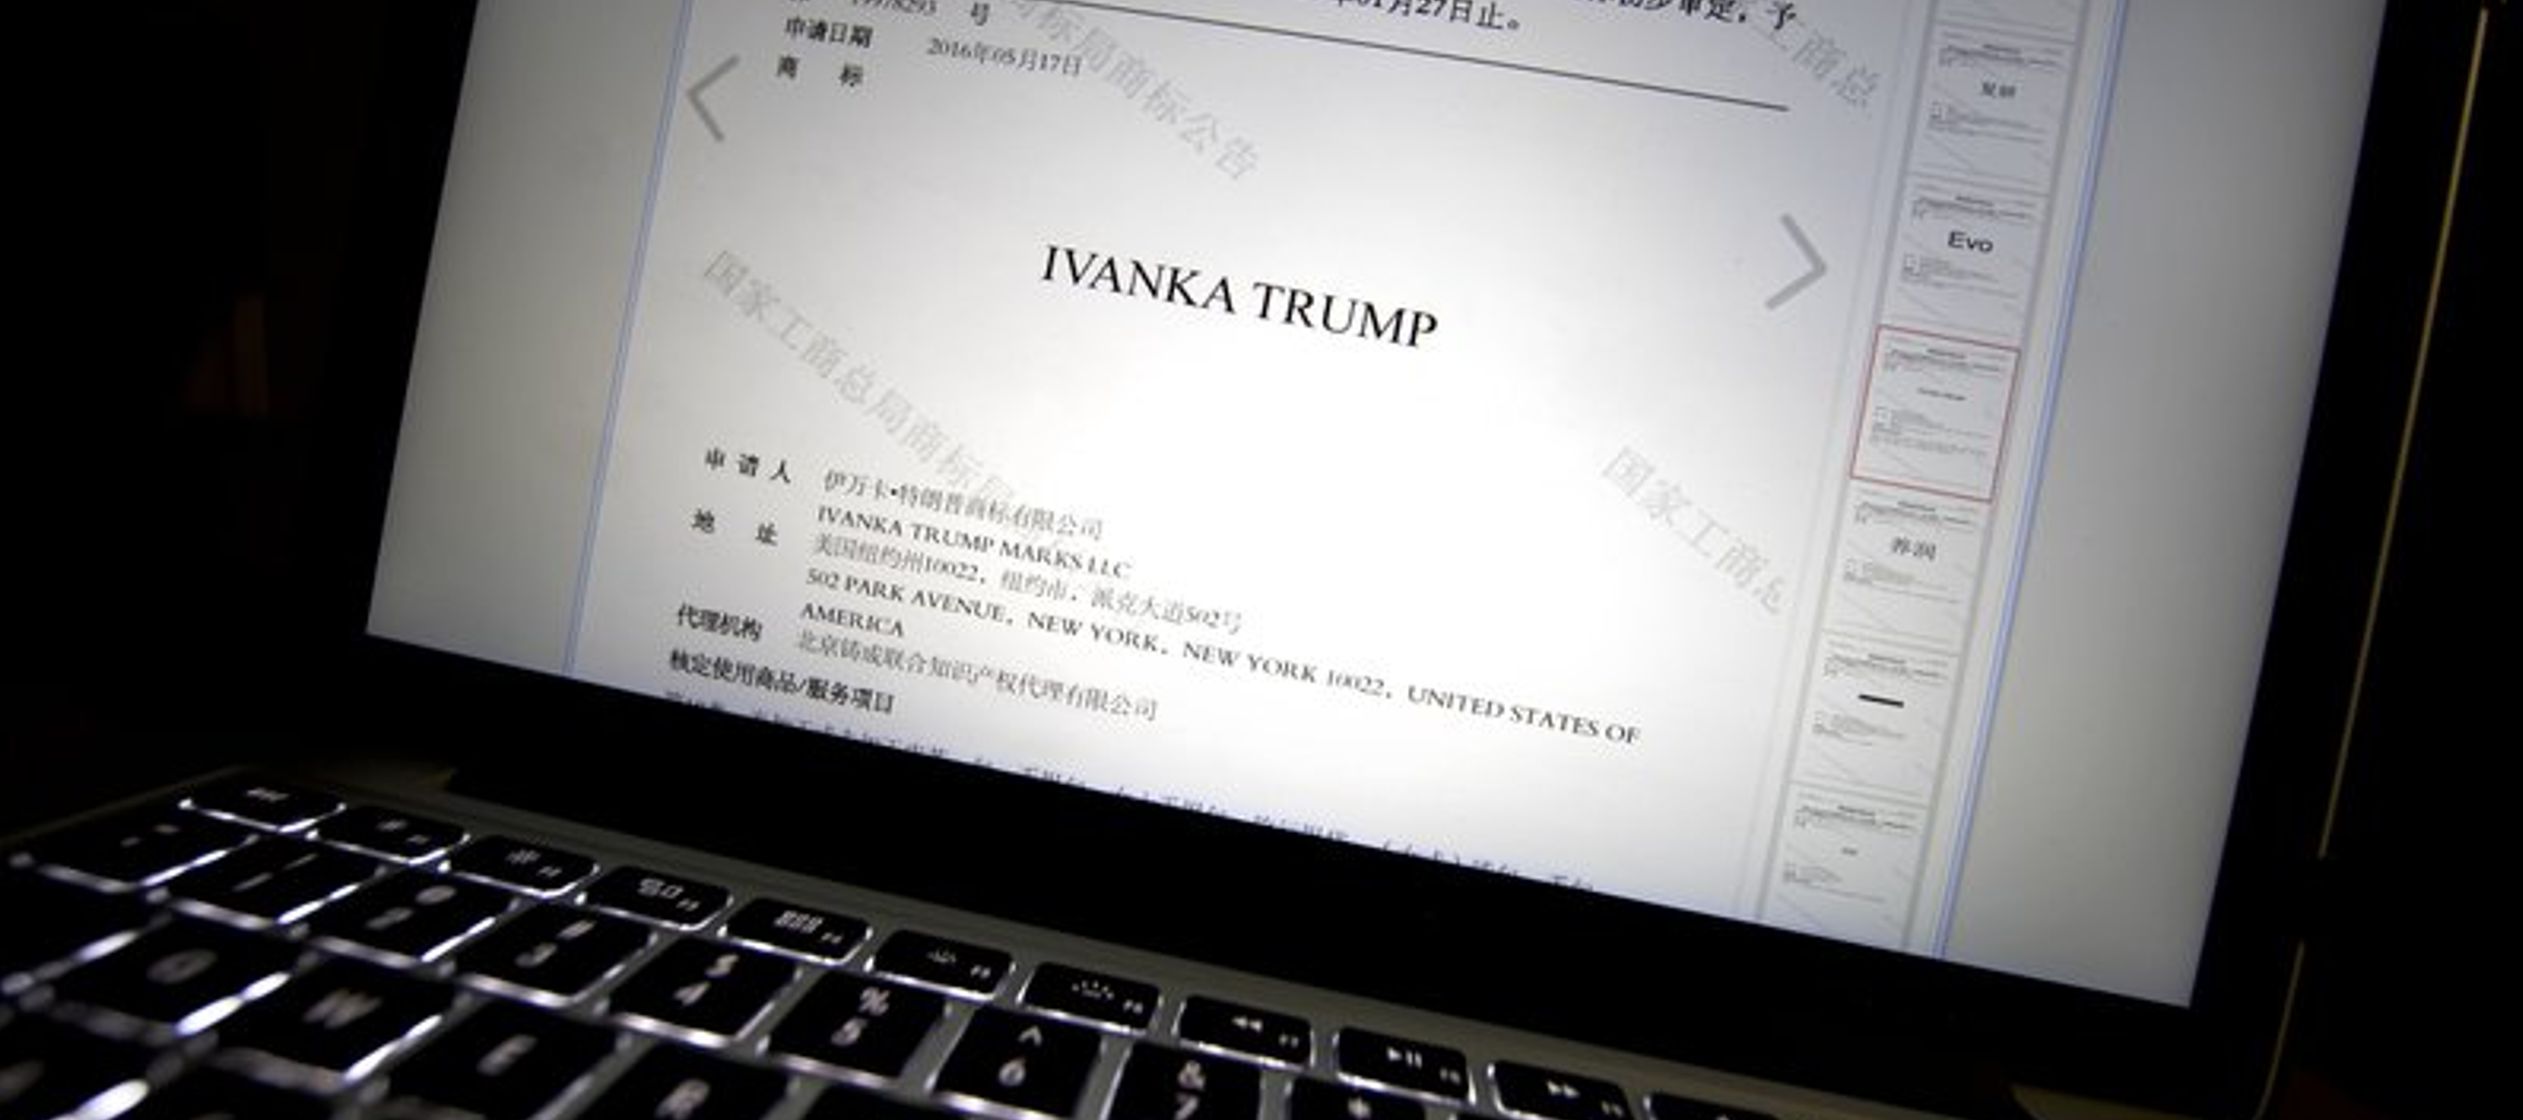 Los abogados de Ivanka Trump en China no respondieron a la petición de comentar al respecto.